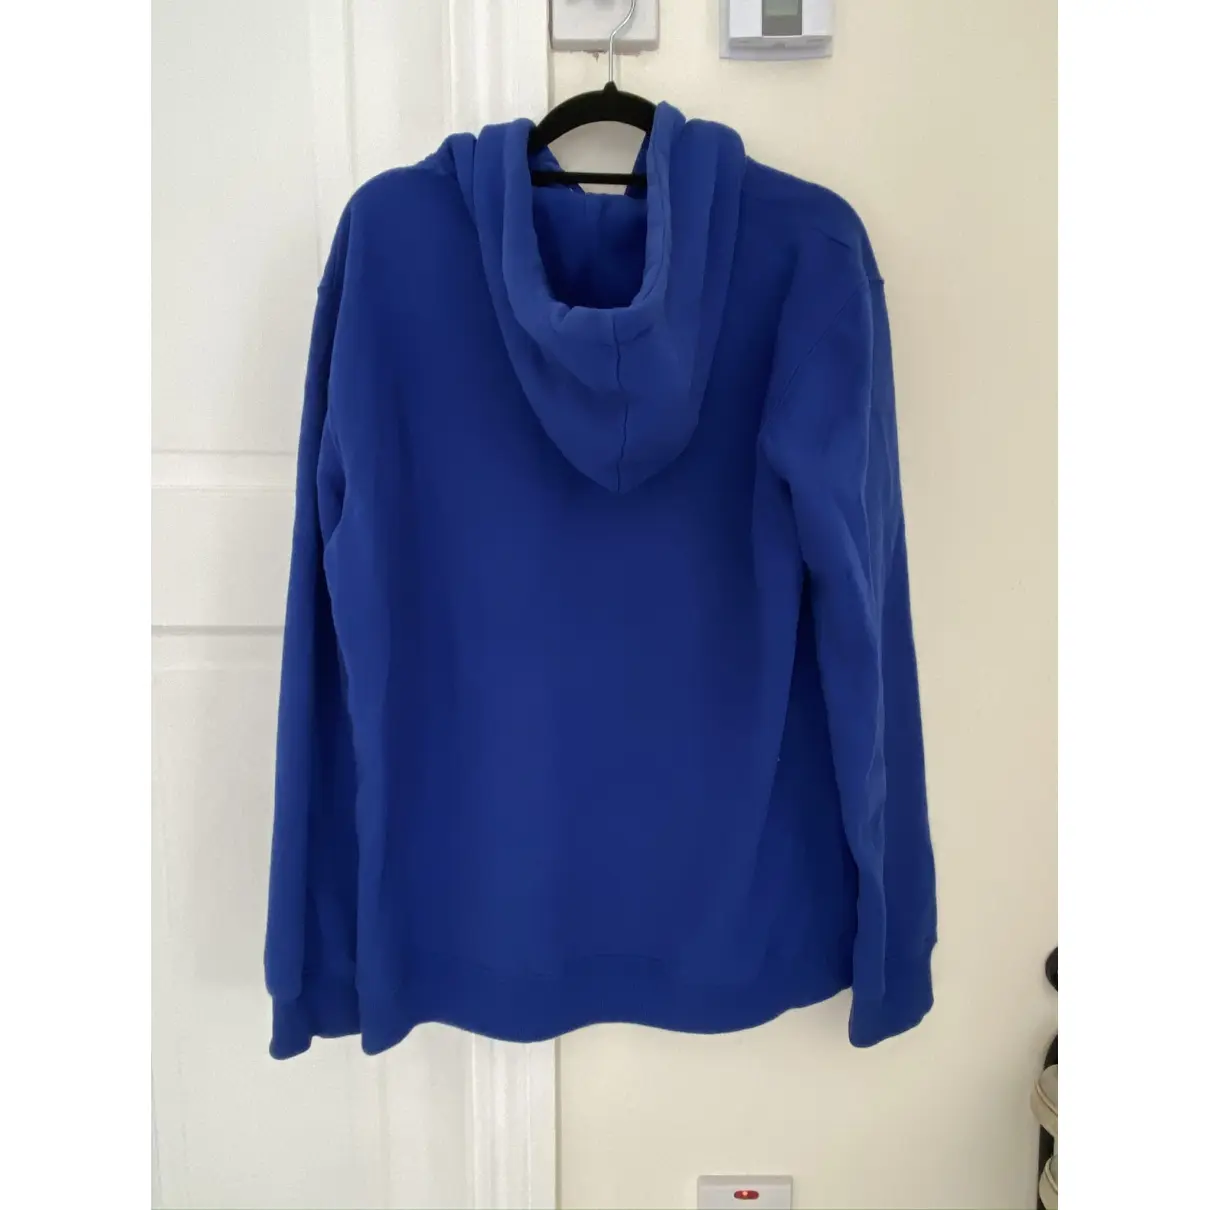 Buy Axel Arigato Blue Cotton Knitwear & Sweatshirt online